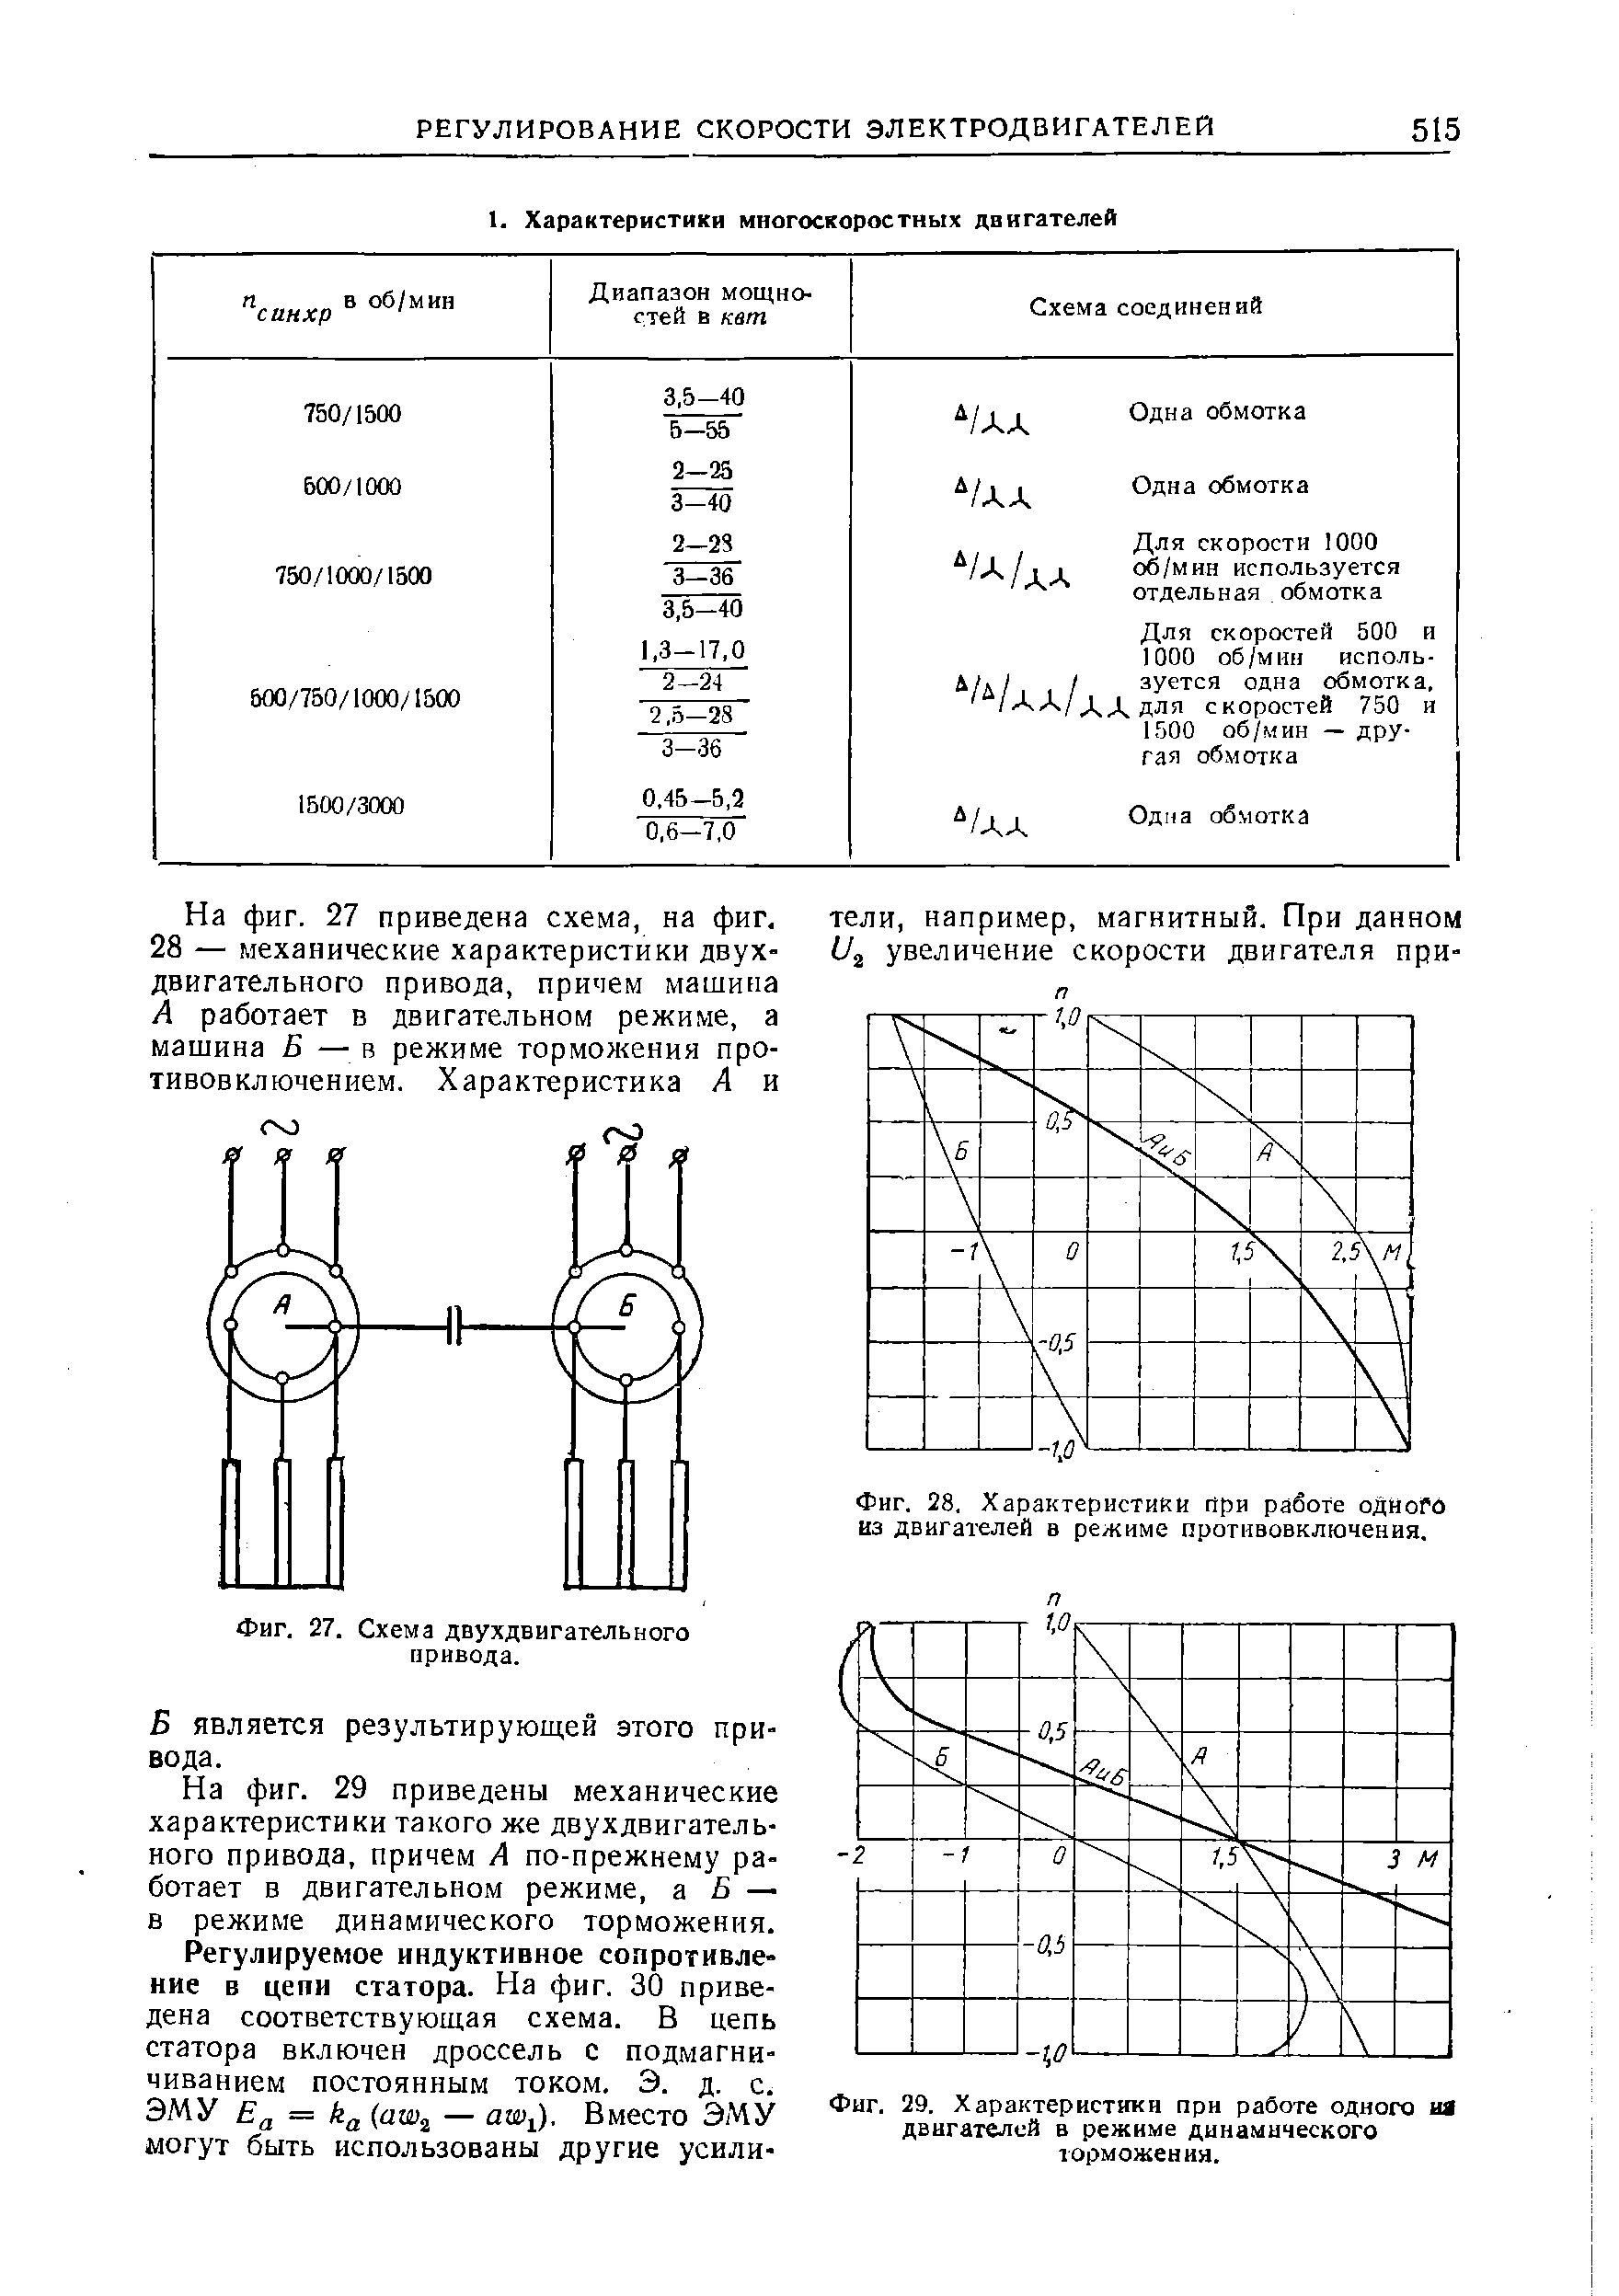 Фиг. 27. Схема двухдвигательного привода.
